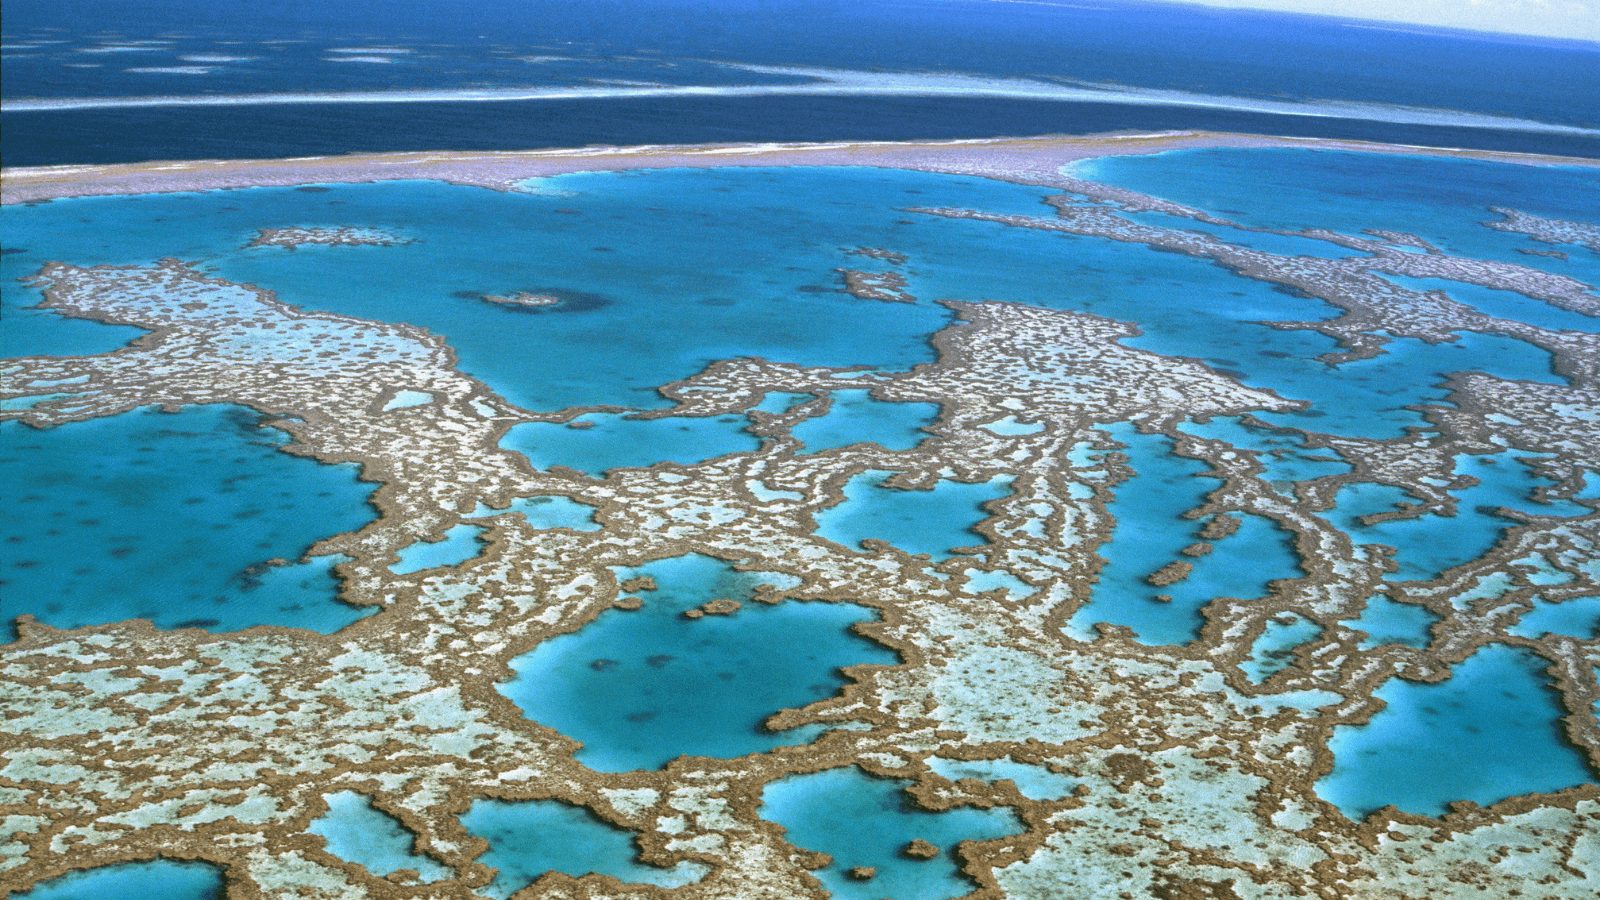 UNESCO World Heritage sites - Great Barrier Reef